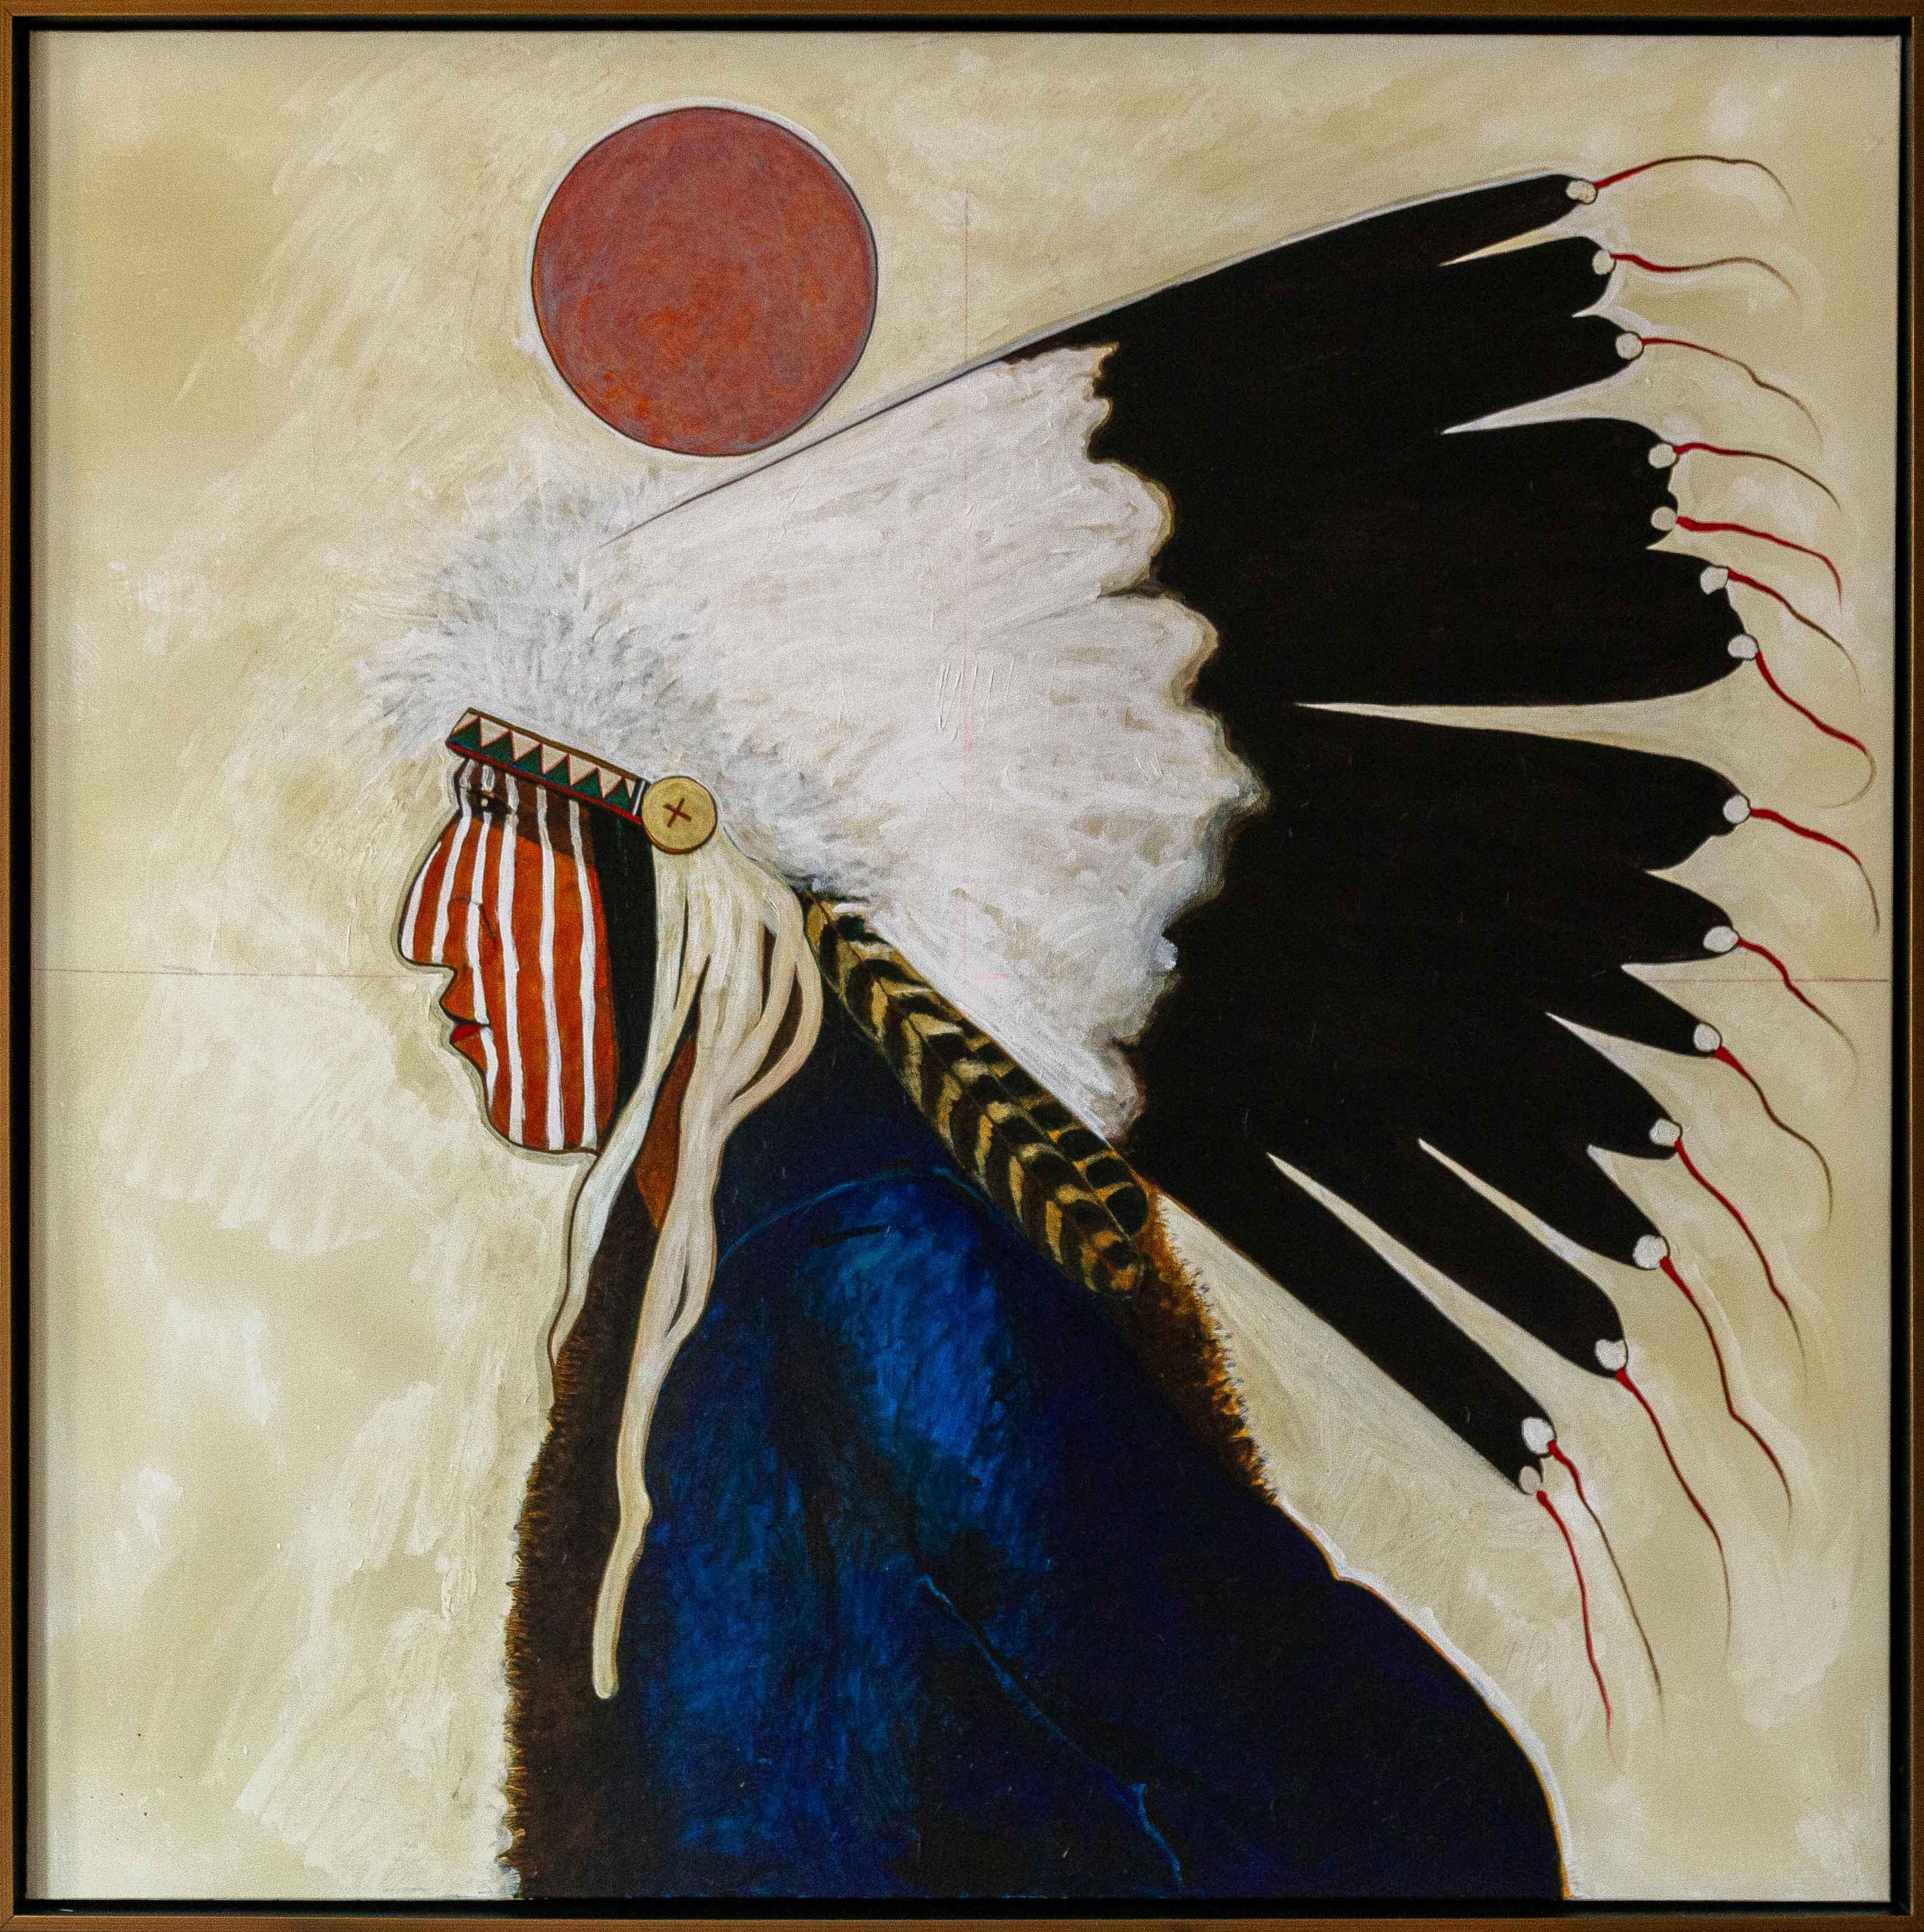 "Morning Fog" de Kevin Red Star. Cette peinture représente un chef aîné Crow. C'était un dirigeant apprécié et bienveillant, connu pour sa bravoure. Acrylique, techniques mixtes sur toile, 48" x 48", 51" x 51" (encadré).
L'art de Kevin Red Star est